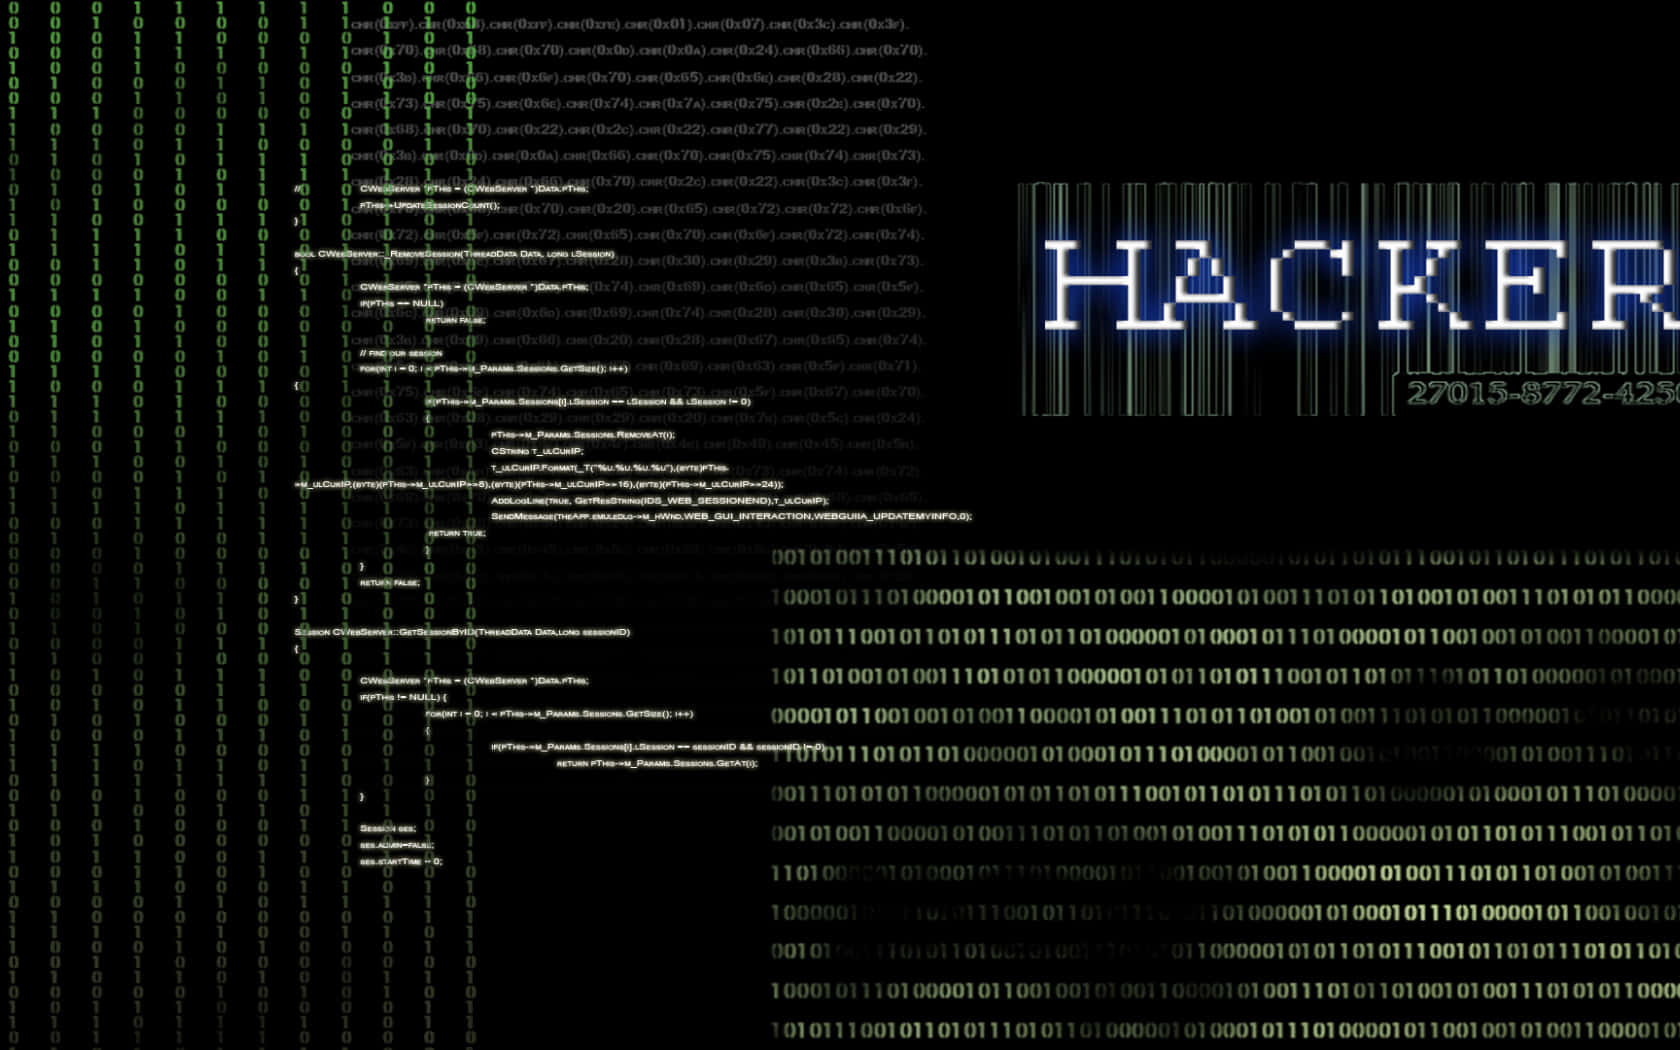 Imagende Software De Hacker De La Dark Web.